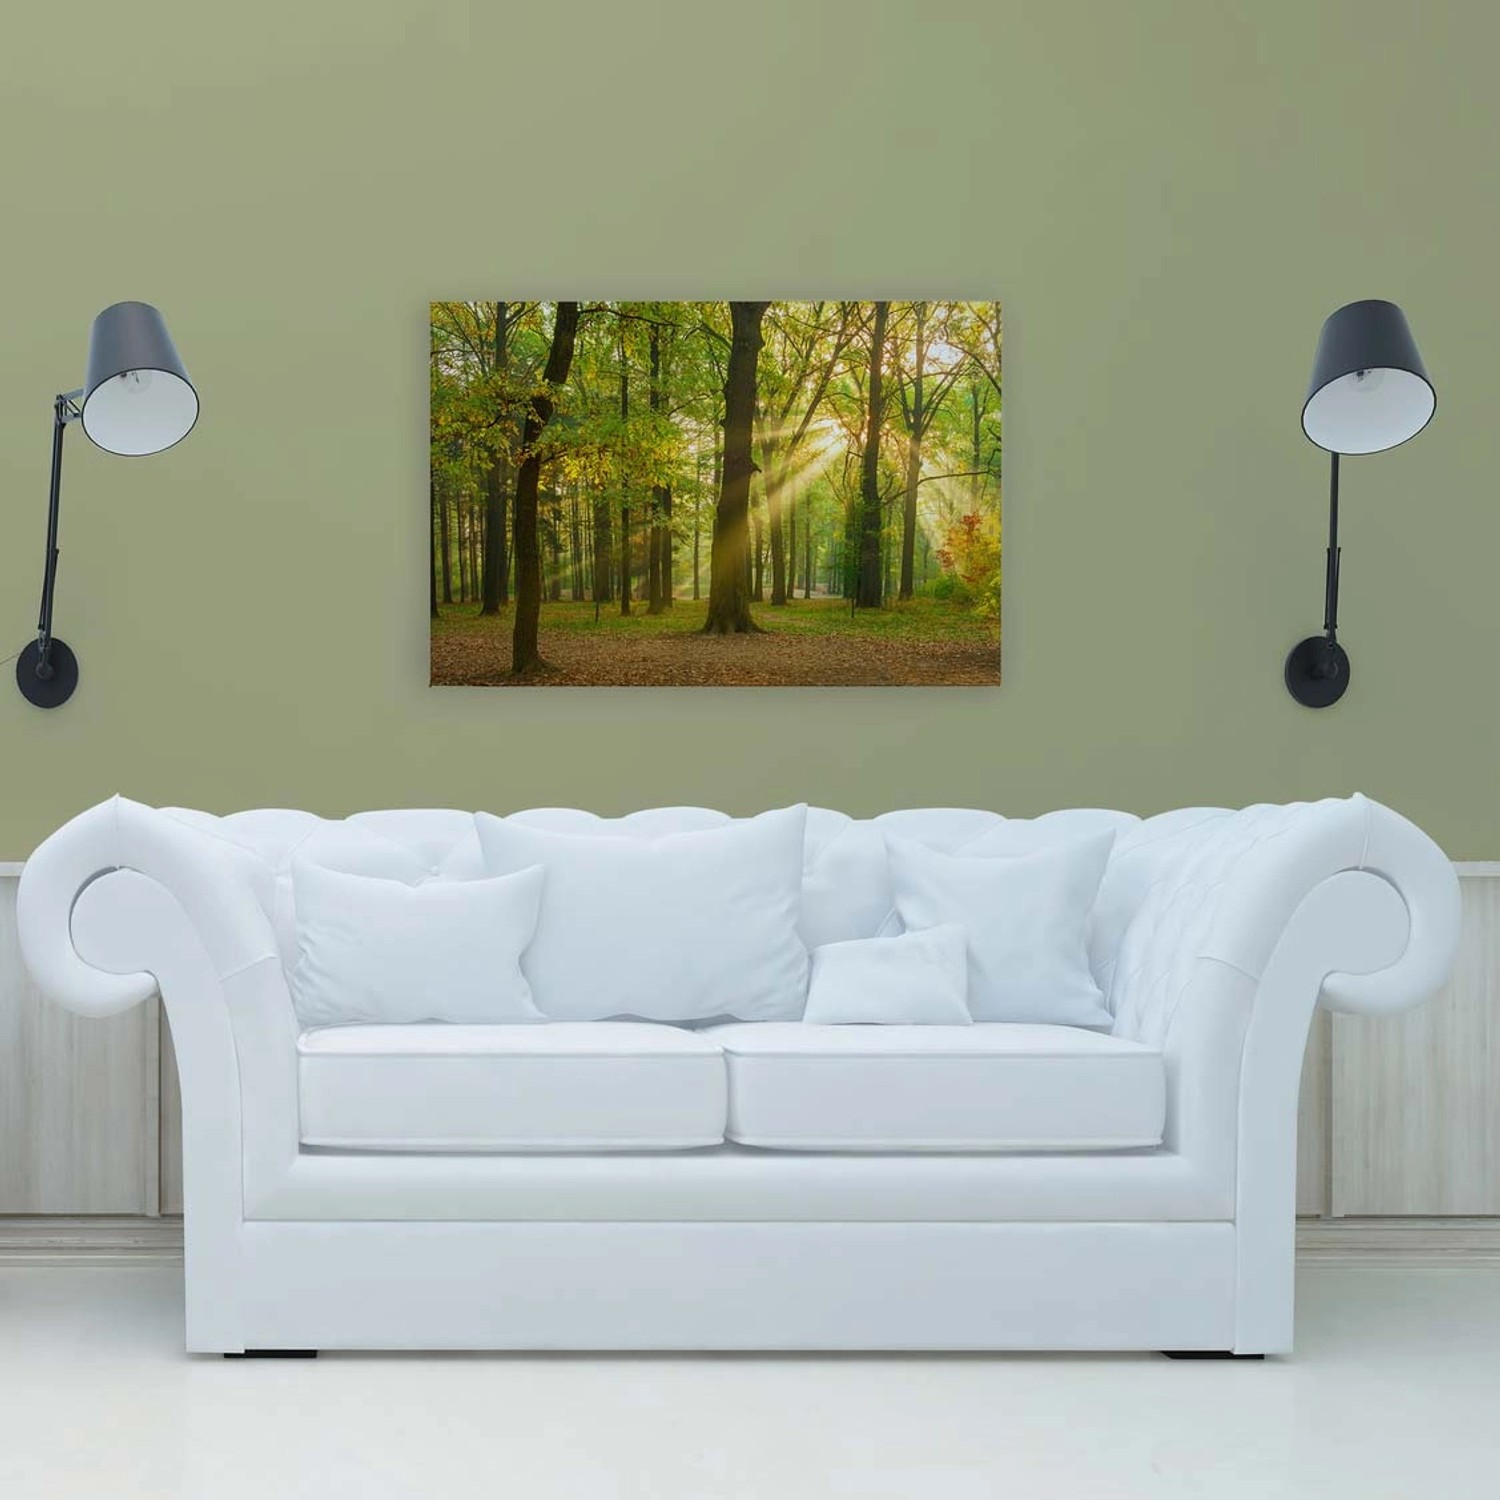 Bricoflor Herbstwald Leinwand Grün Deko Wandbild In 90 X 60 Cm Für Büro Und Schlafzimmer Bild Mit Wald In Sonne Romantis